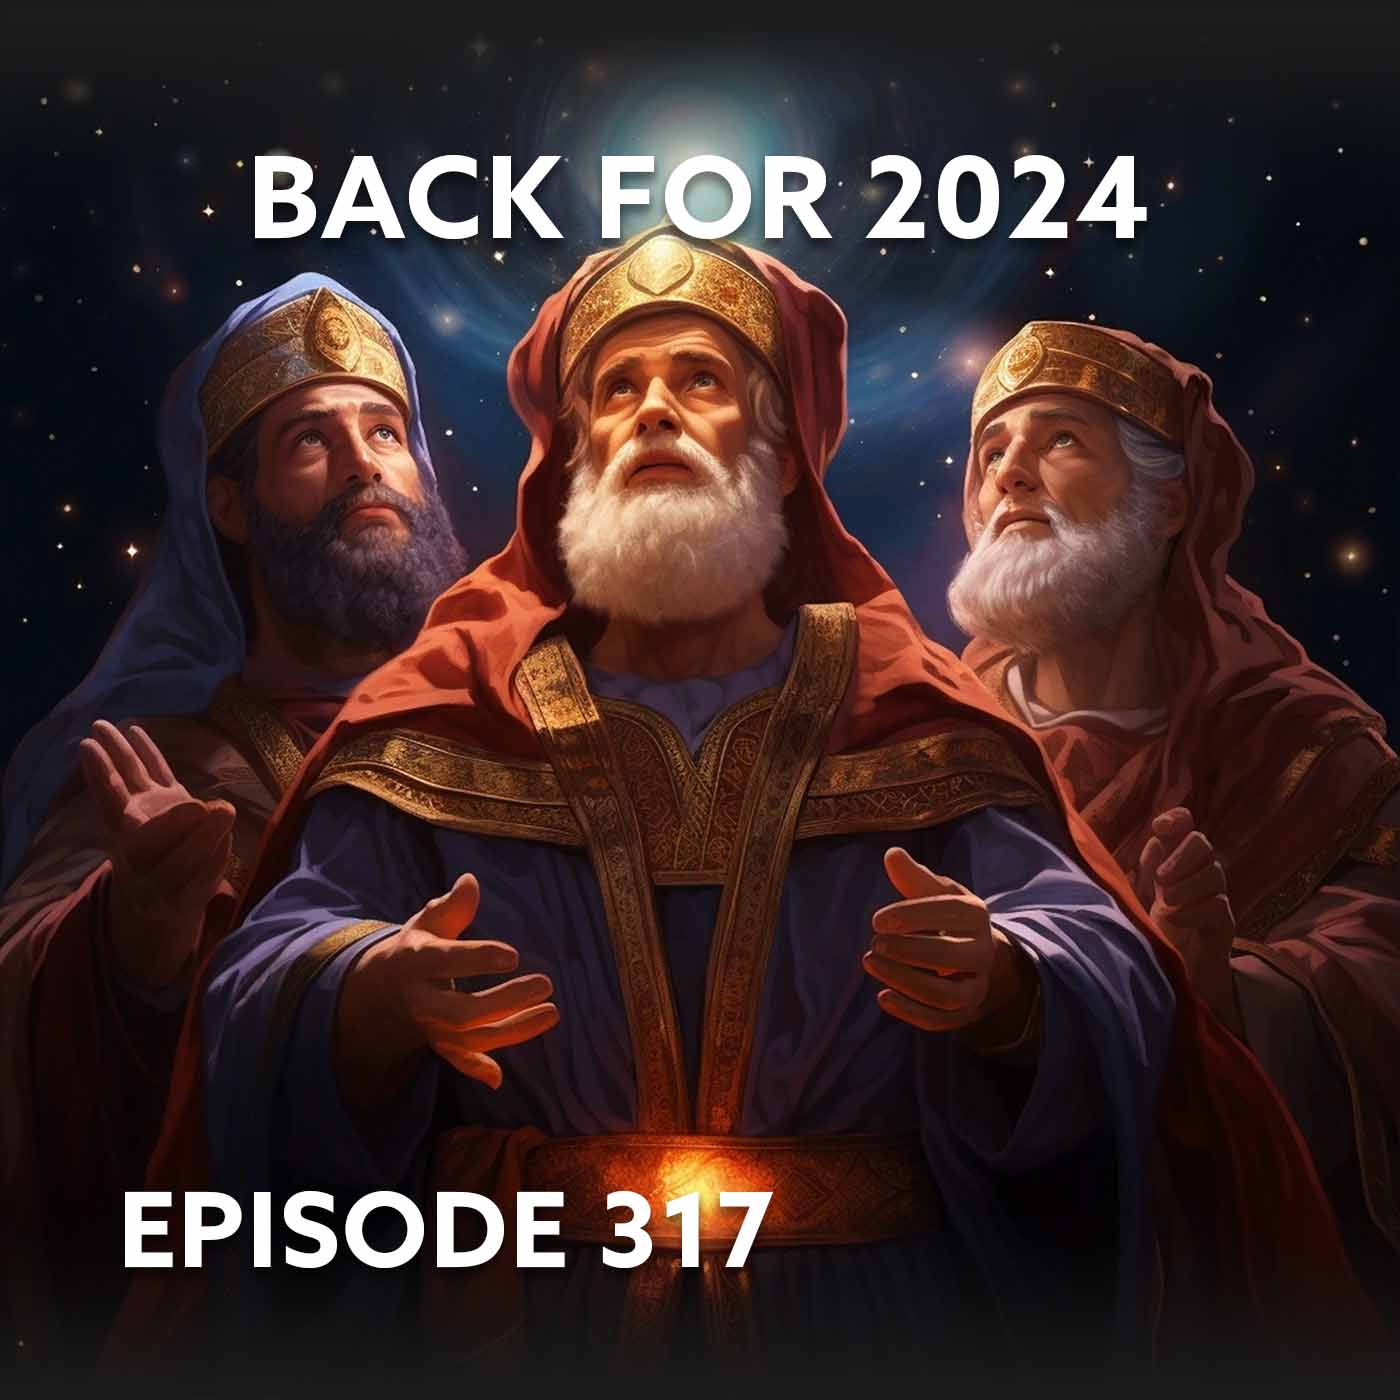 Episode 317 – Back for 2024